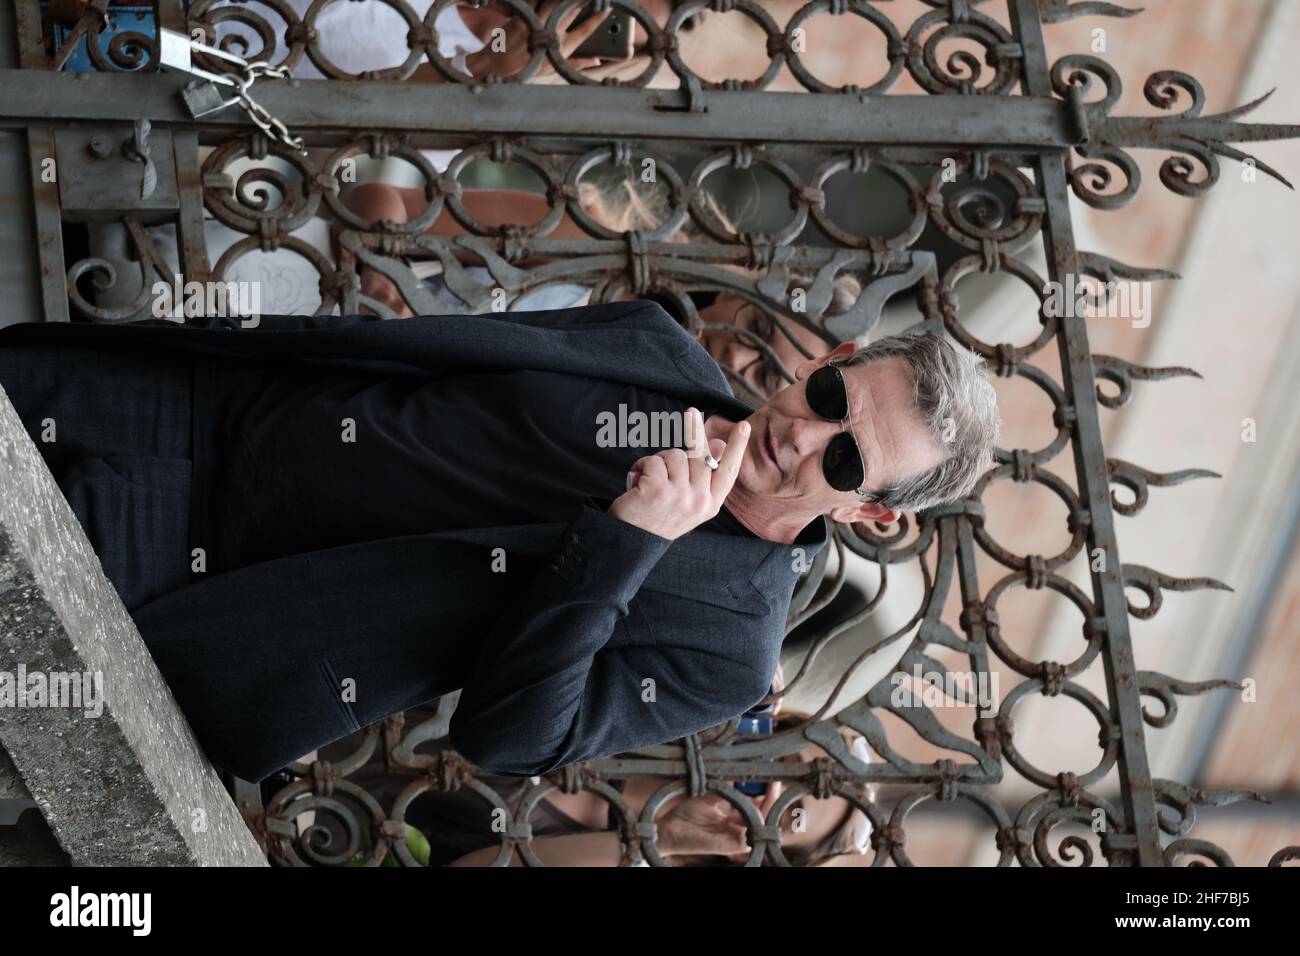 Ben Mendelsohn arrive au Festival du film de Venise 76th le 02 septembre 2019 à Venise, en Italie Banque D'Images